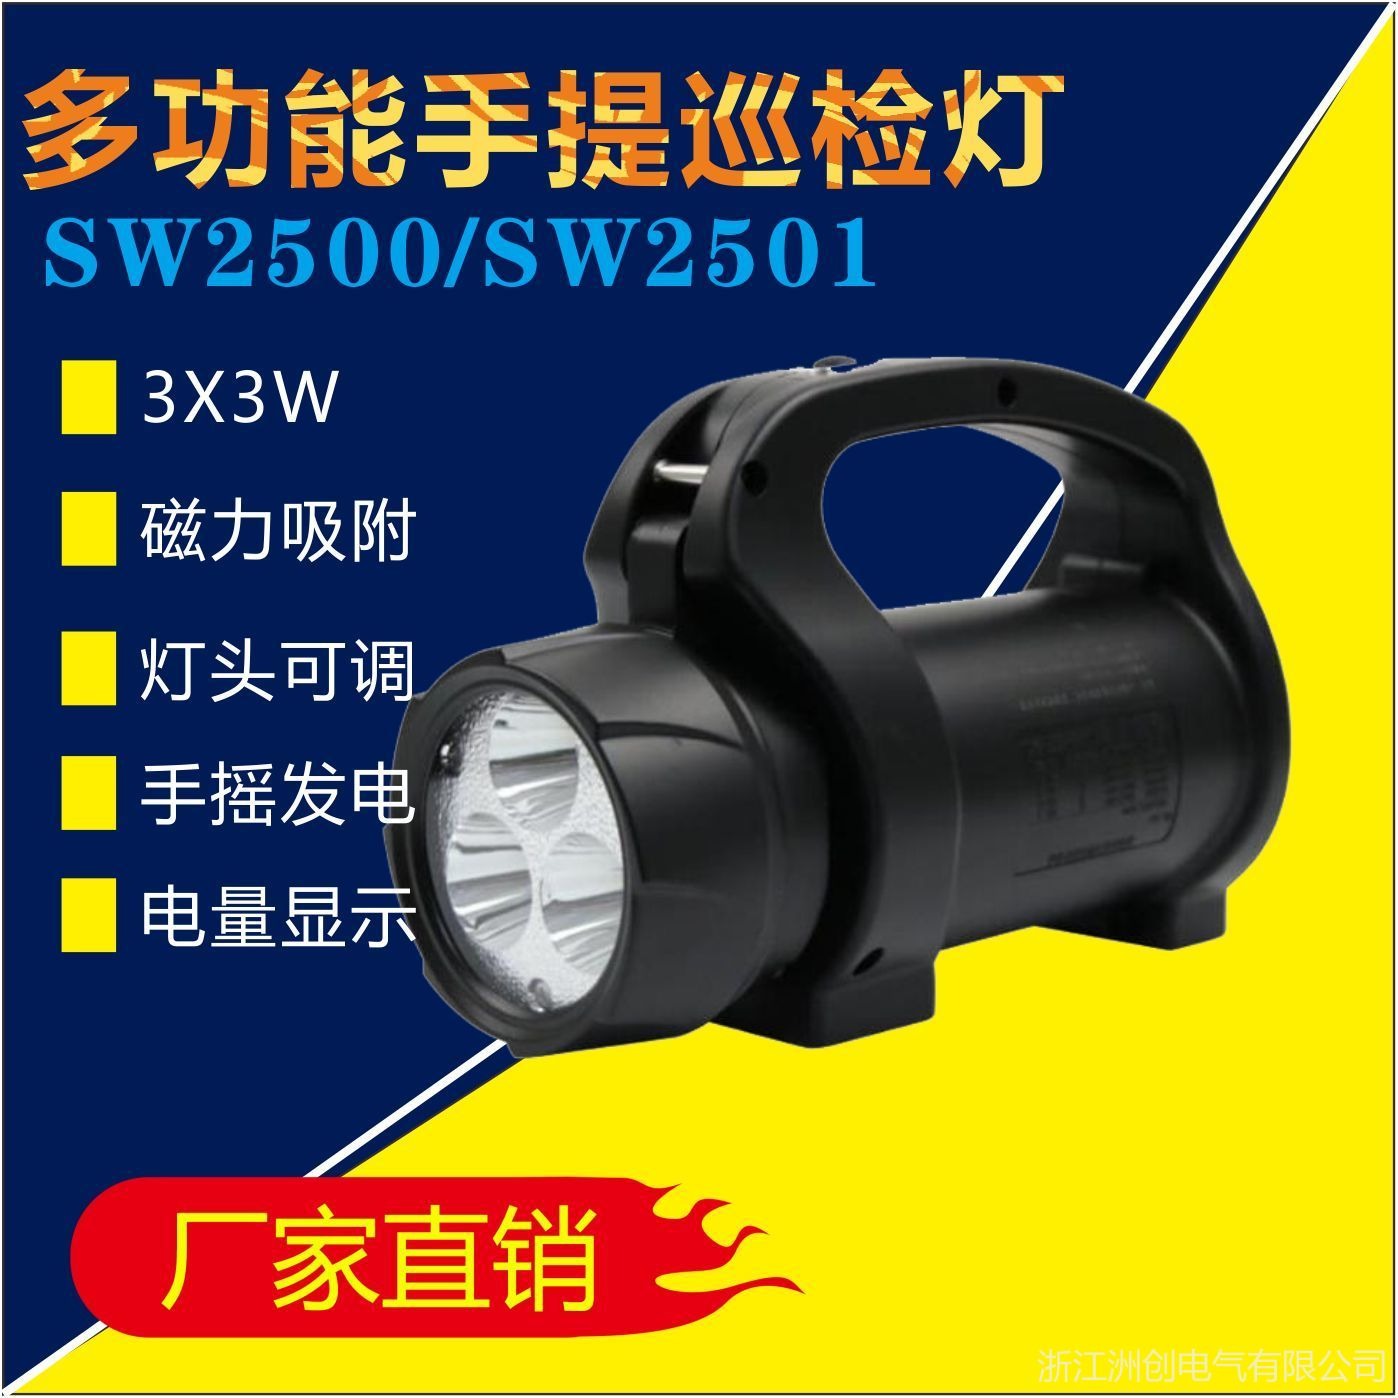 SW2510手摇发电磁力探照工作灯 SW2500多功能手提式LED巡检灯 电力钢铁煤炭移动照明灯